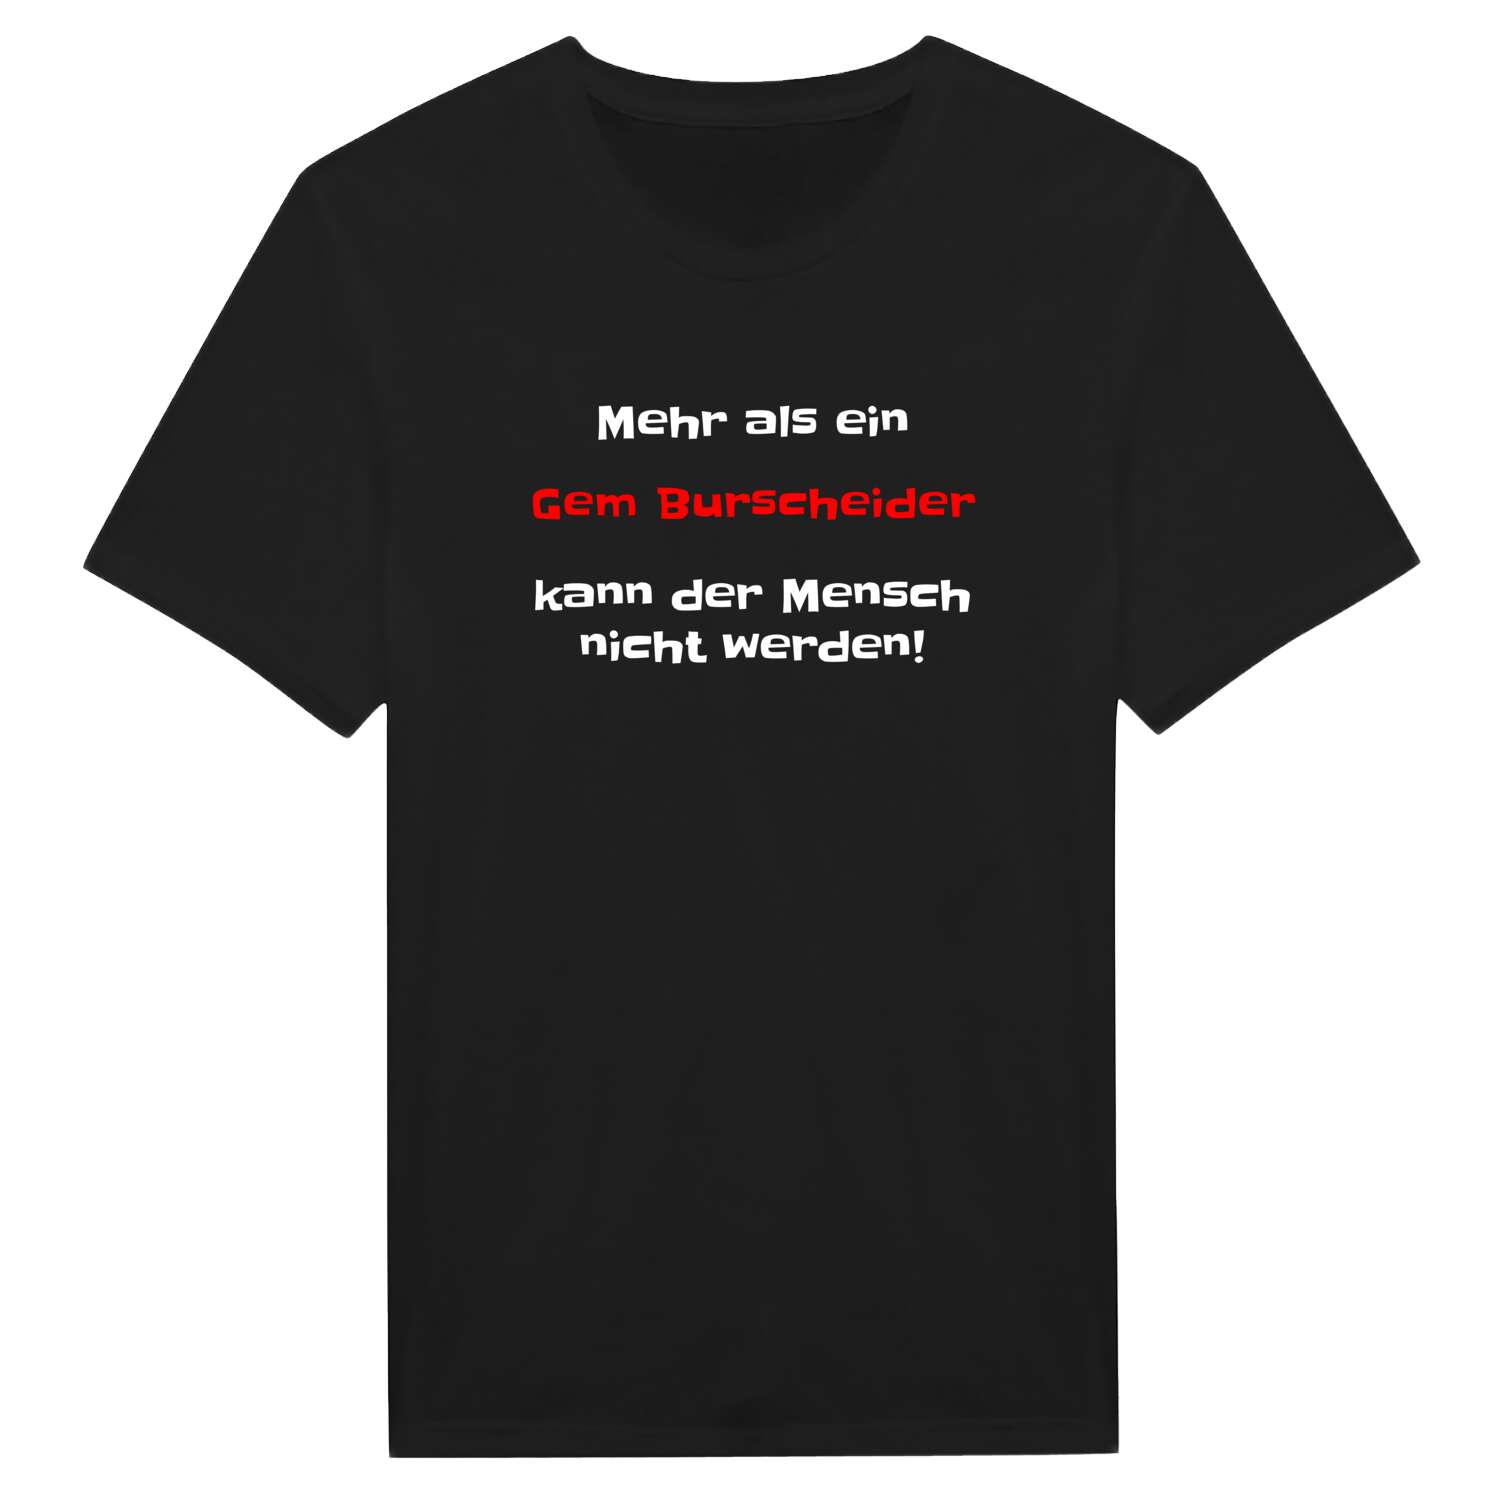 Gem Burscheid T-Shirt »Mehr als ein«